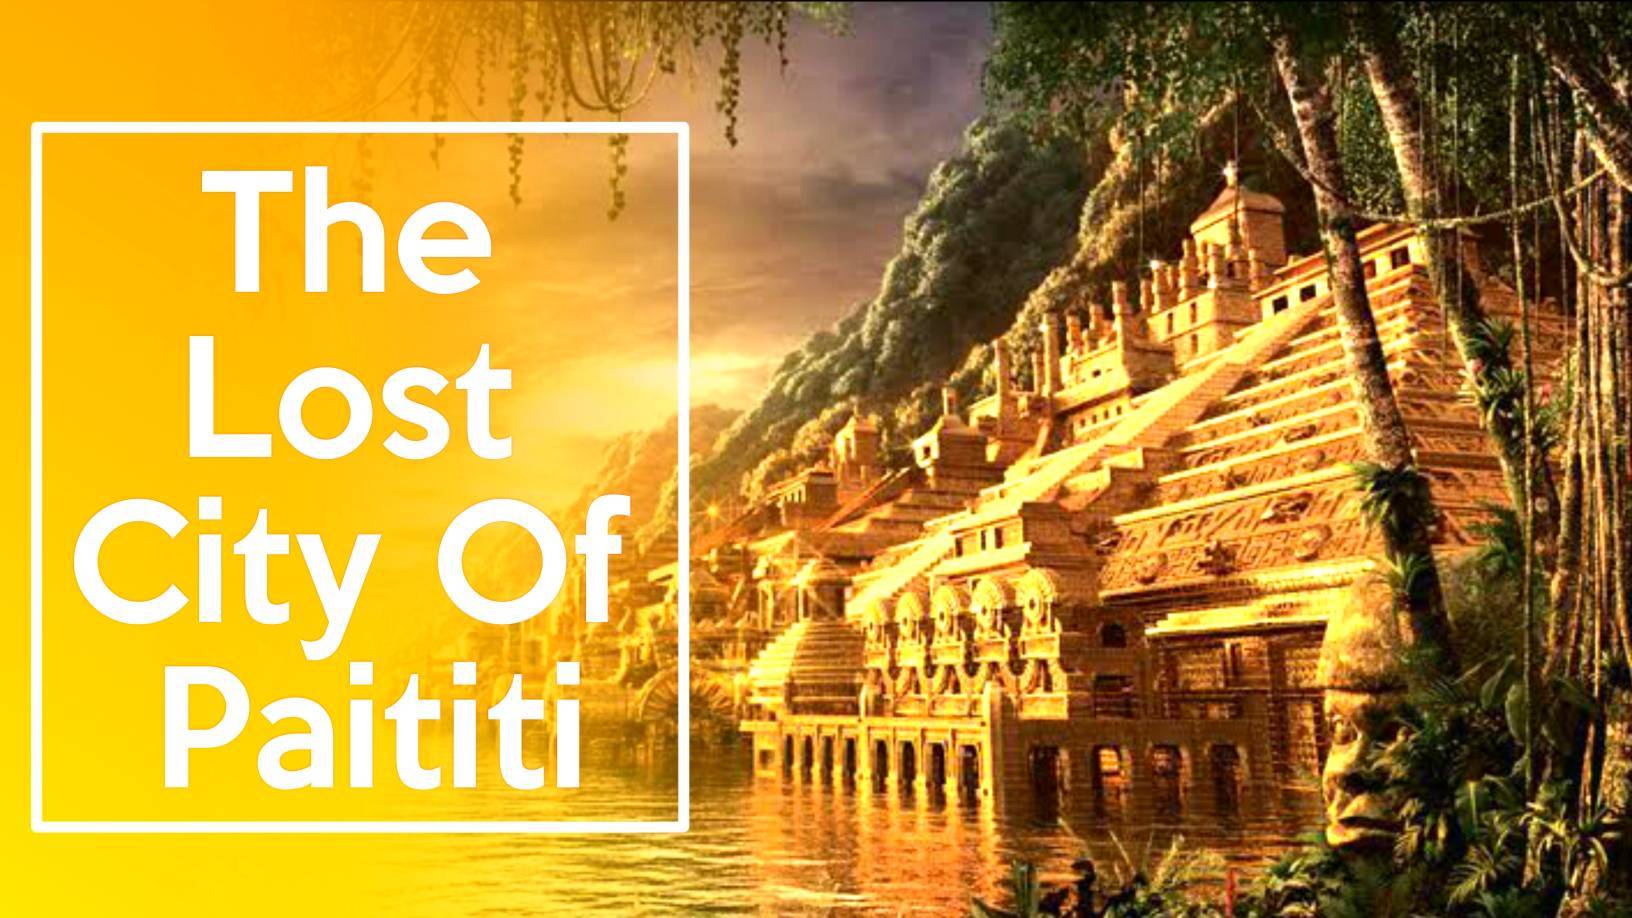 Kota emas: Kota Paititi yang hilang mungkin merupakan penemuan sejarah paling menguntungkan 2